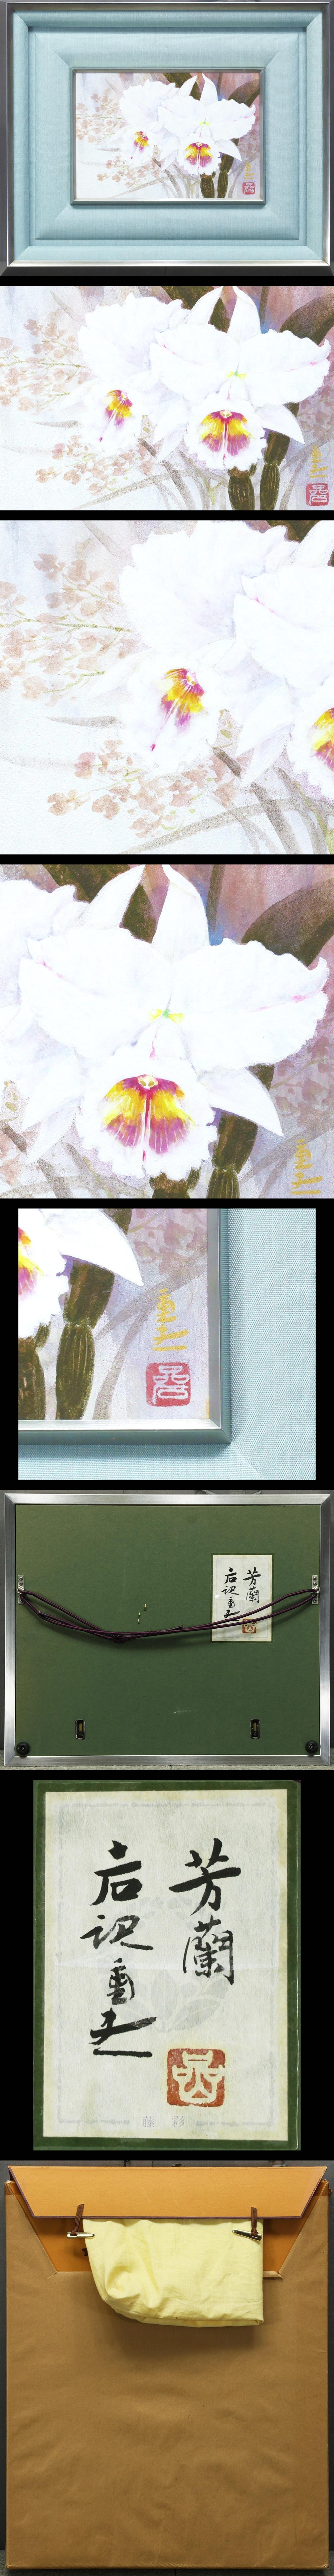 真作】【WISH】岩澤重夫「芳蘭」日本画 SM 金落款 金泥仕様 共シール